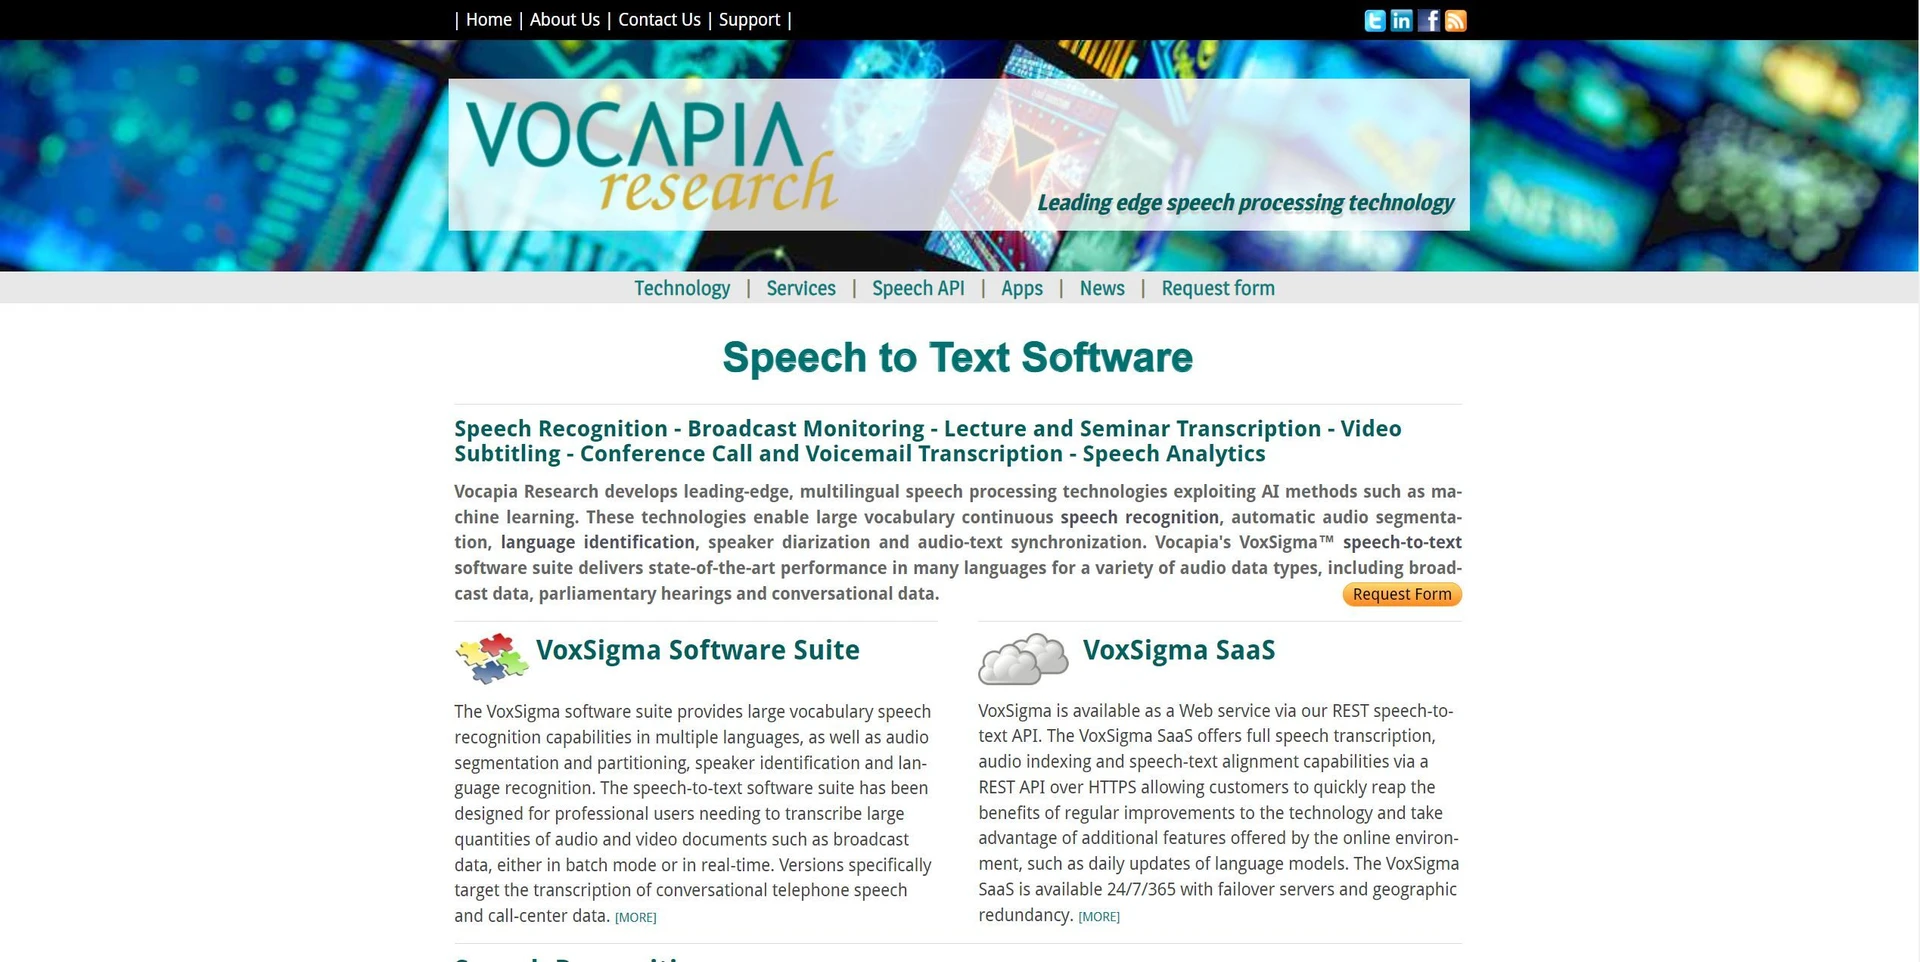 Vocapiawebsite picture